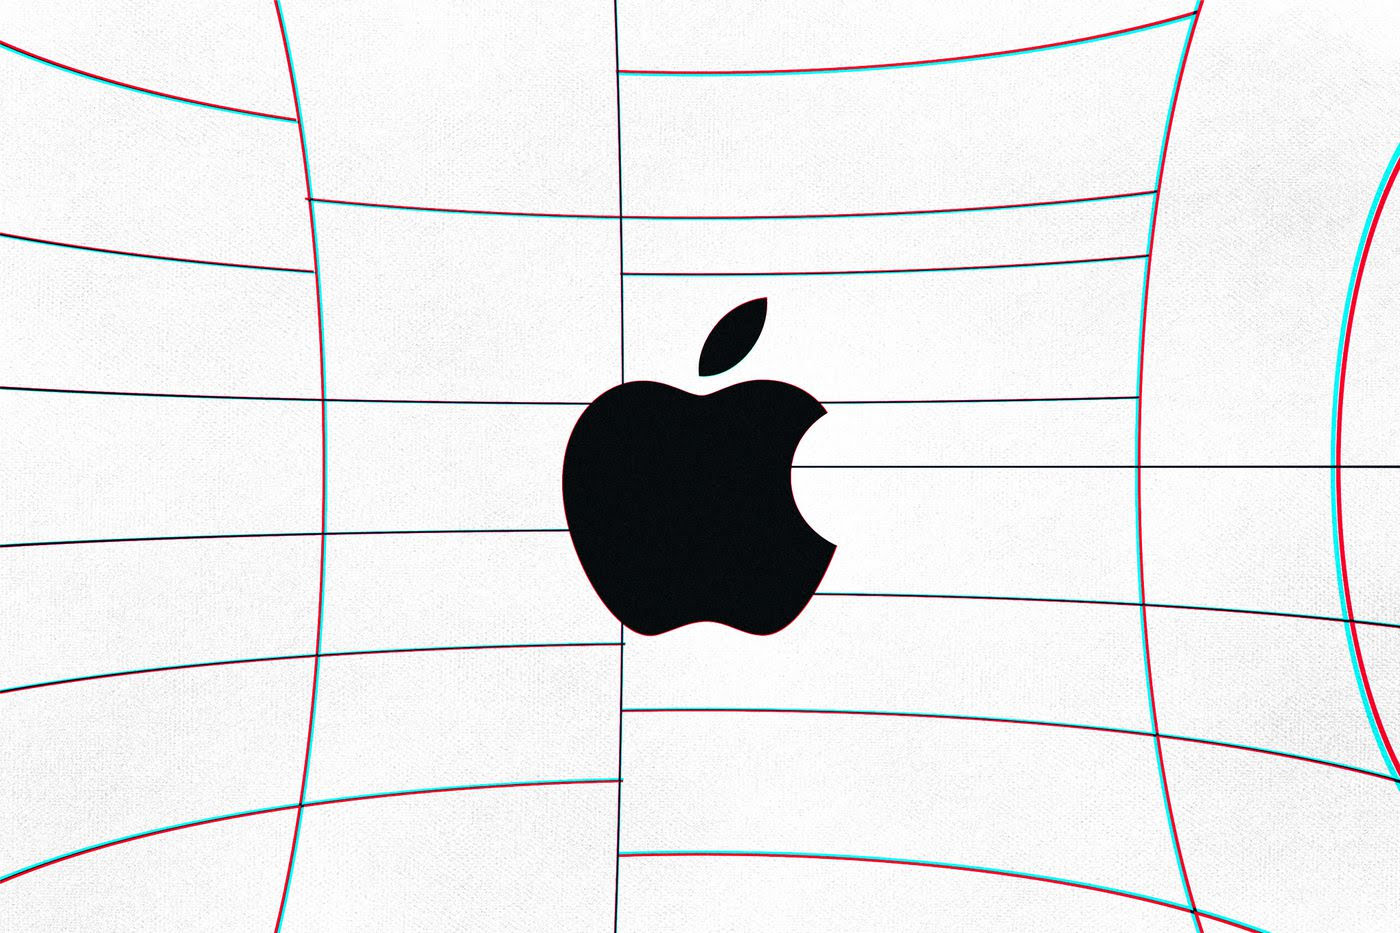 Apple says it hates leaks